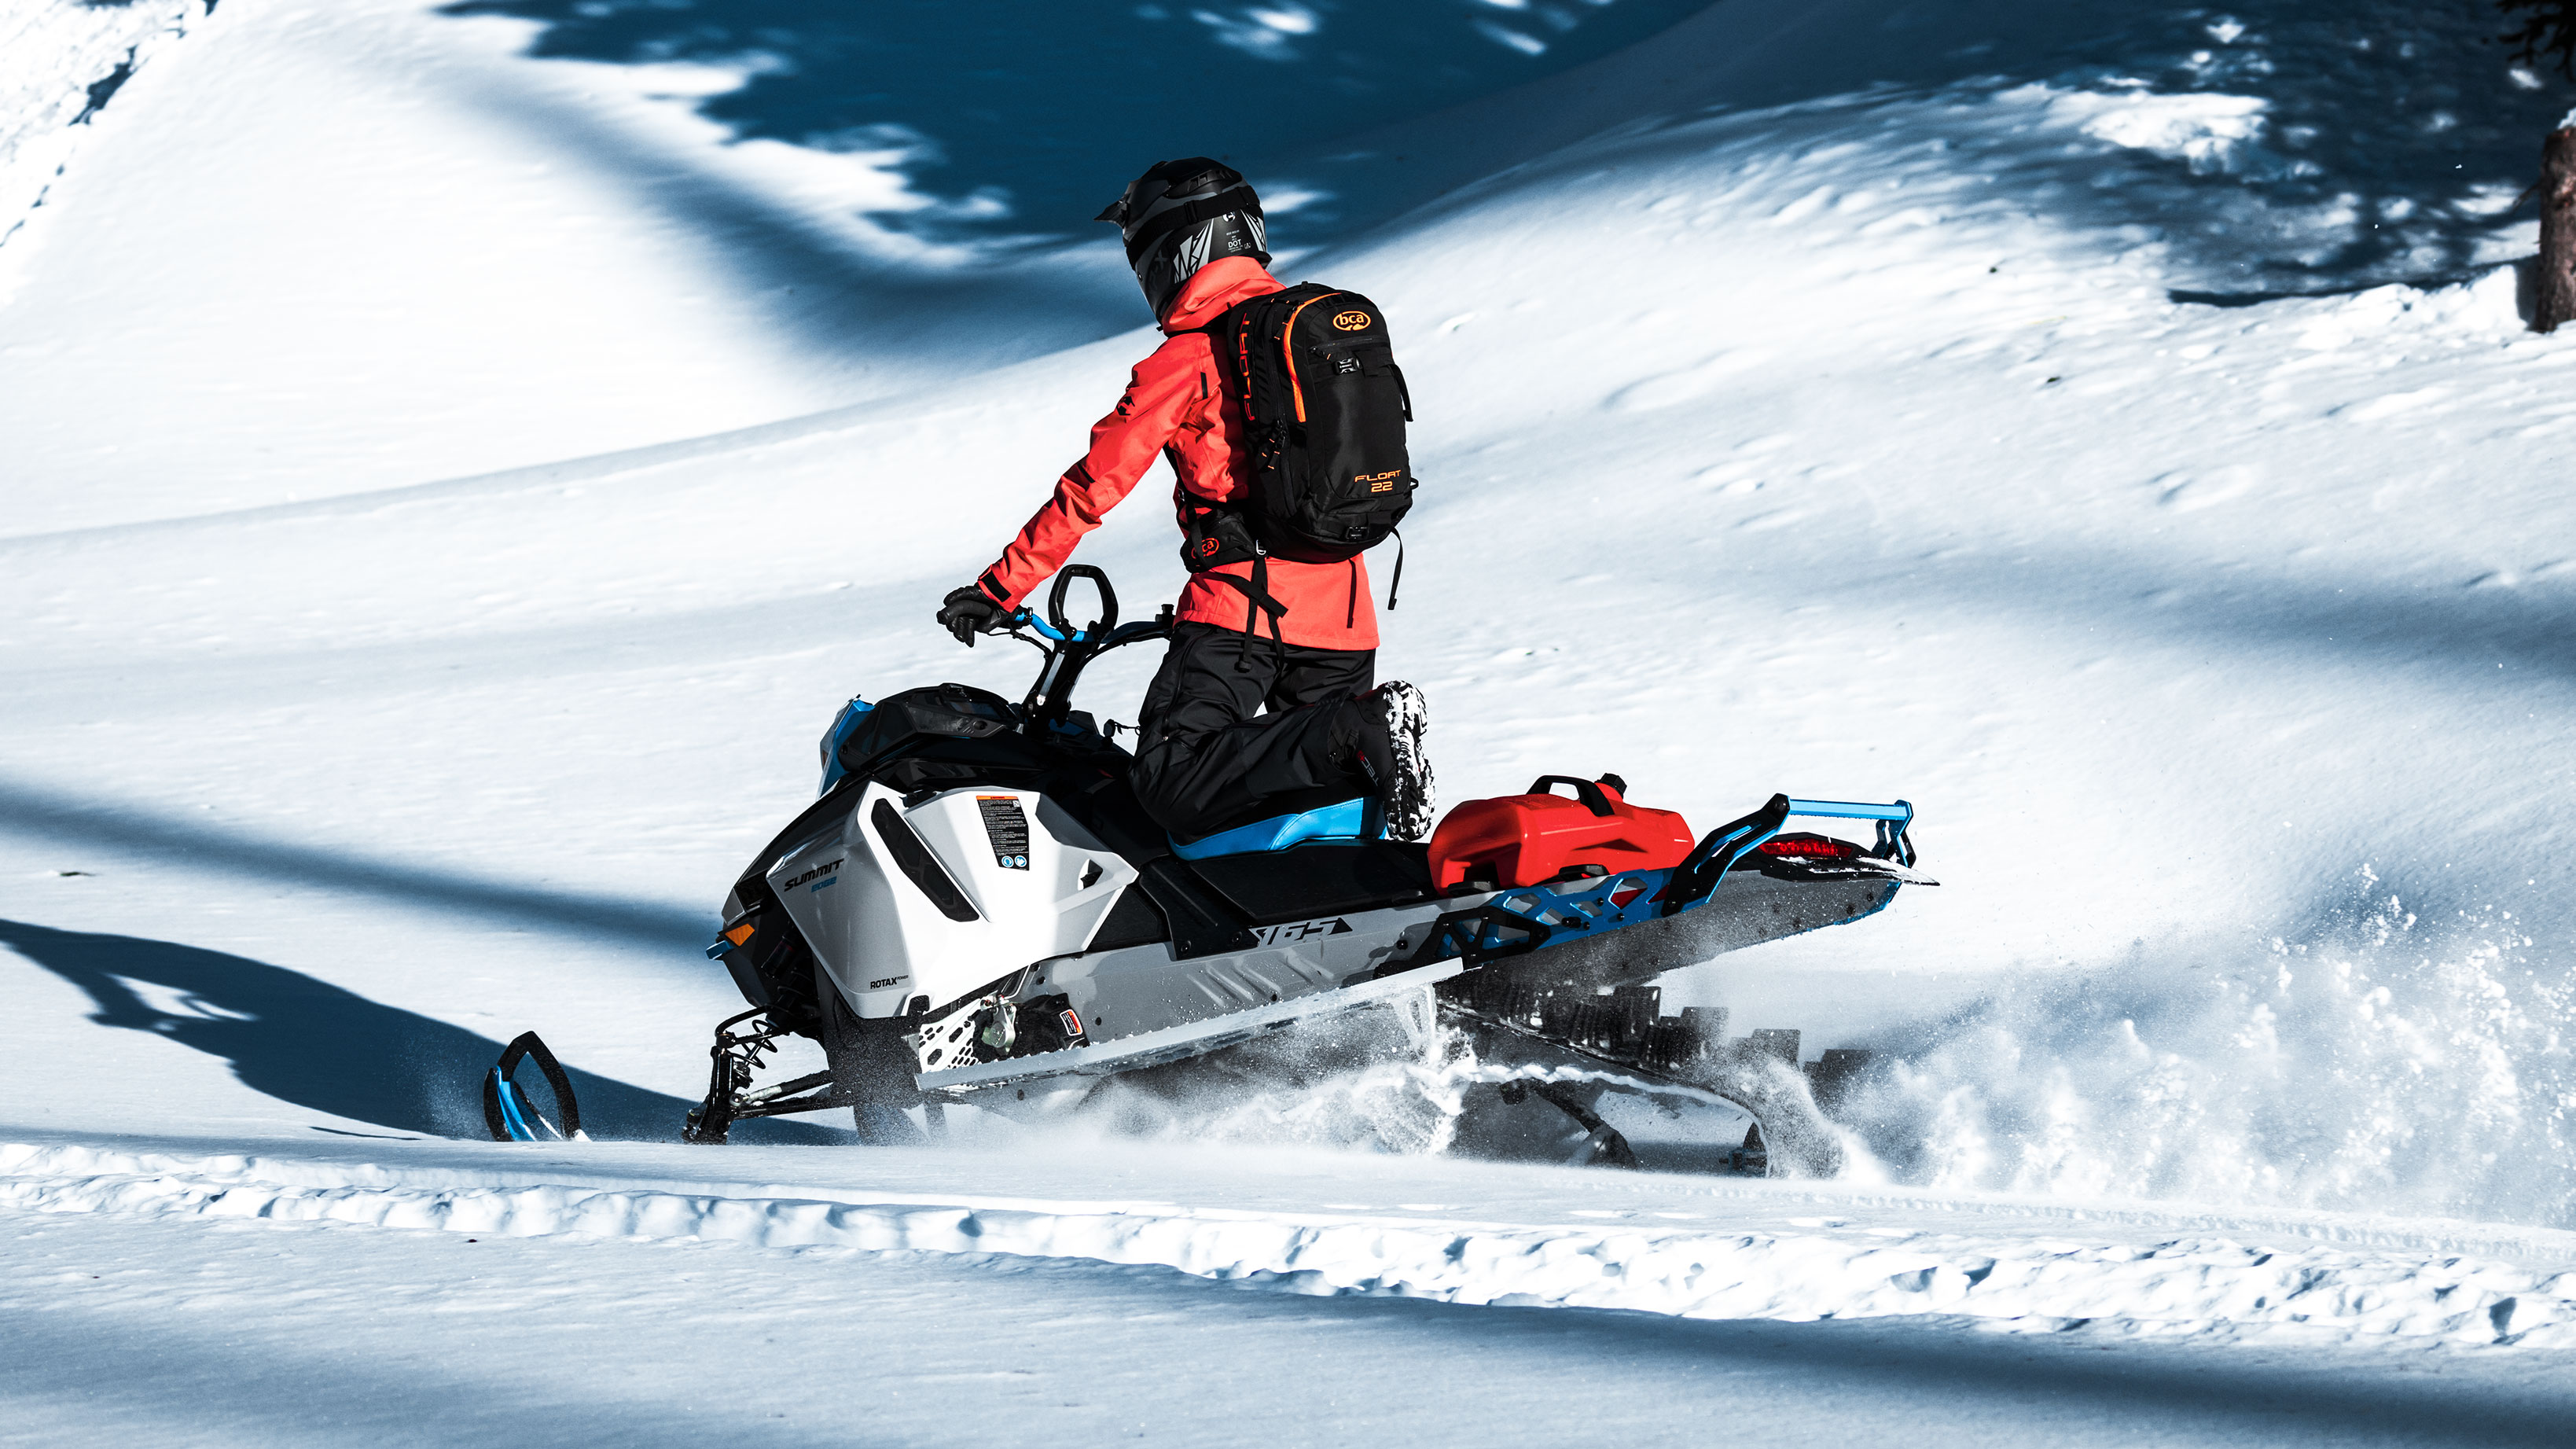 Moški vozi 2022 Ski-Doo Summit na gori